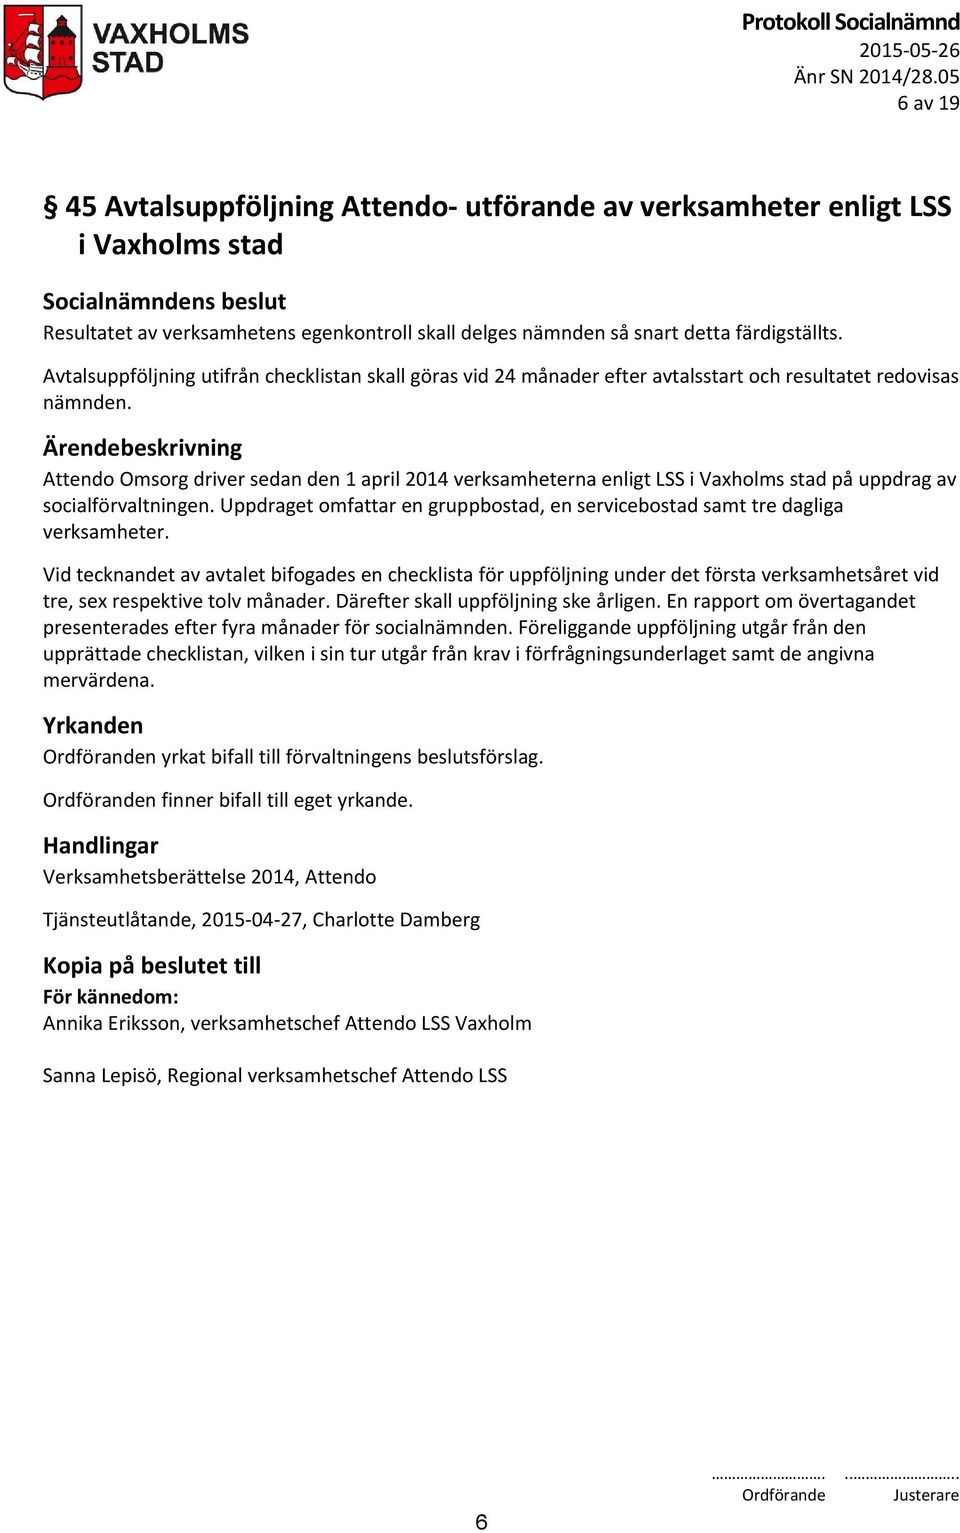 Attendo Omsorg driver sedan den 1 april 2014 verksamheterna enligt LSS i Vaxholms stad på uppdrag av socialförvaltningen.